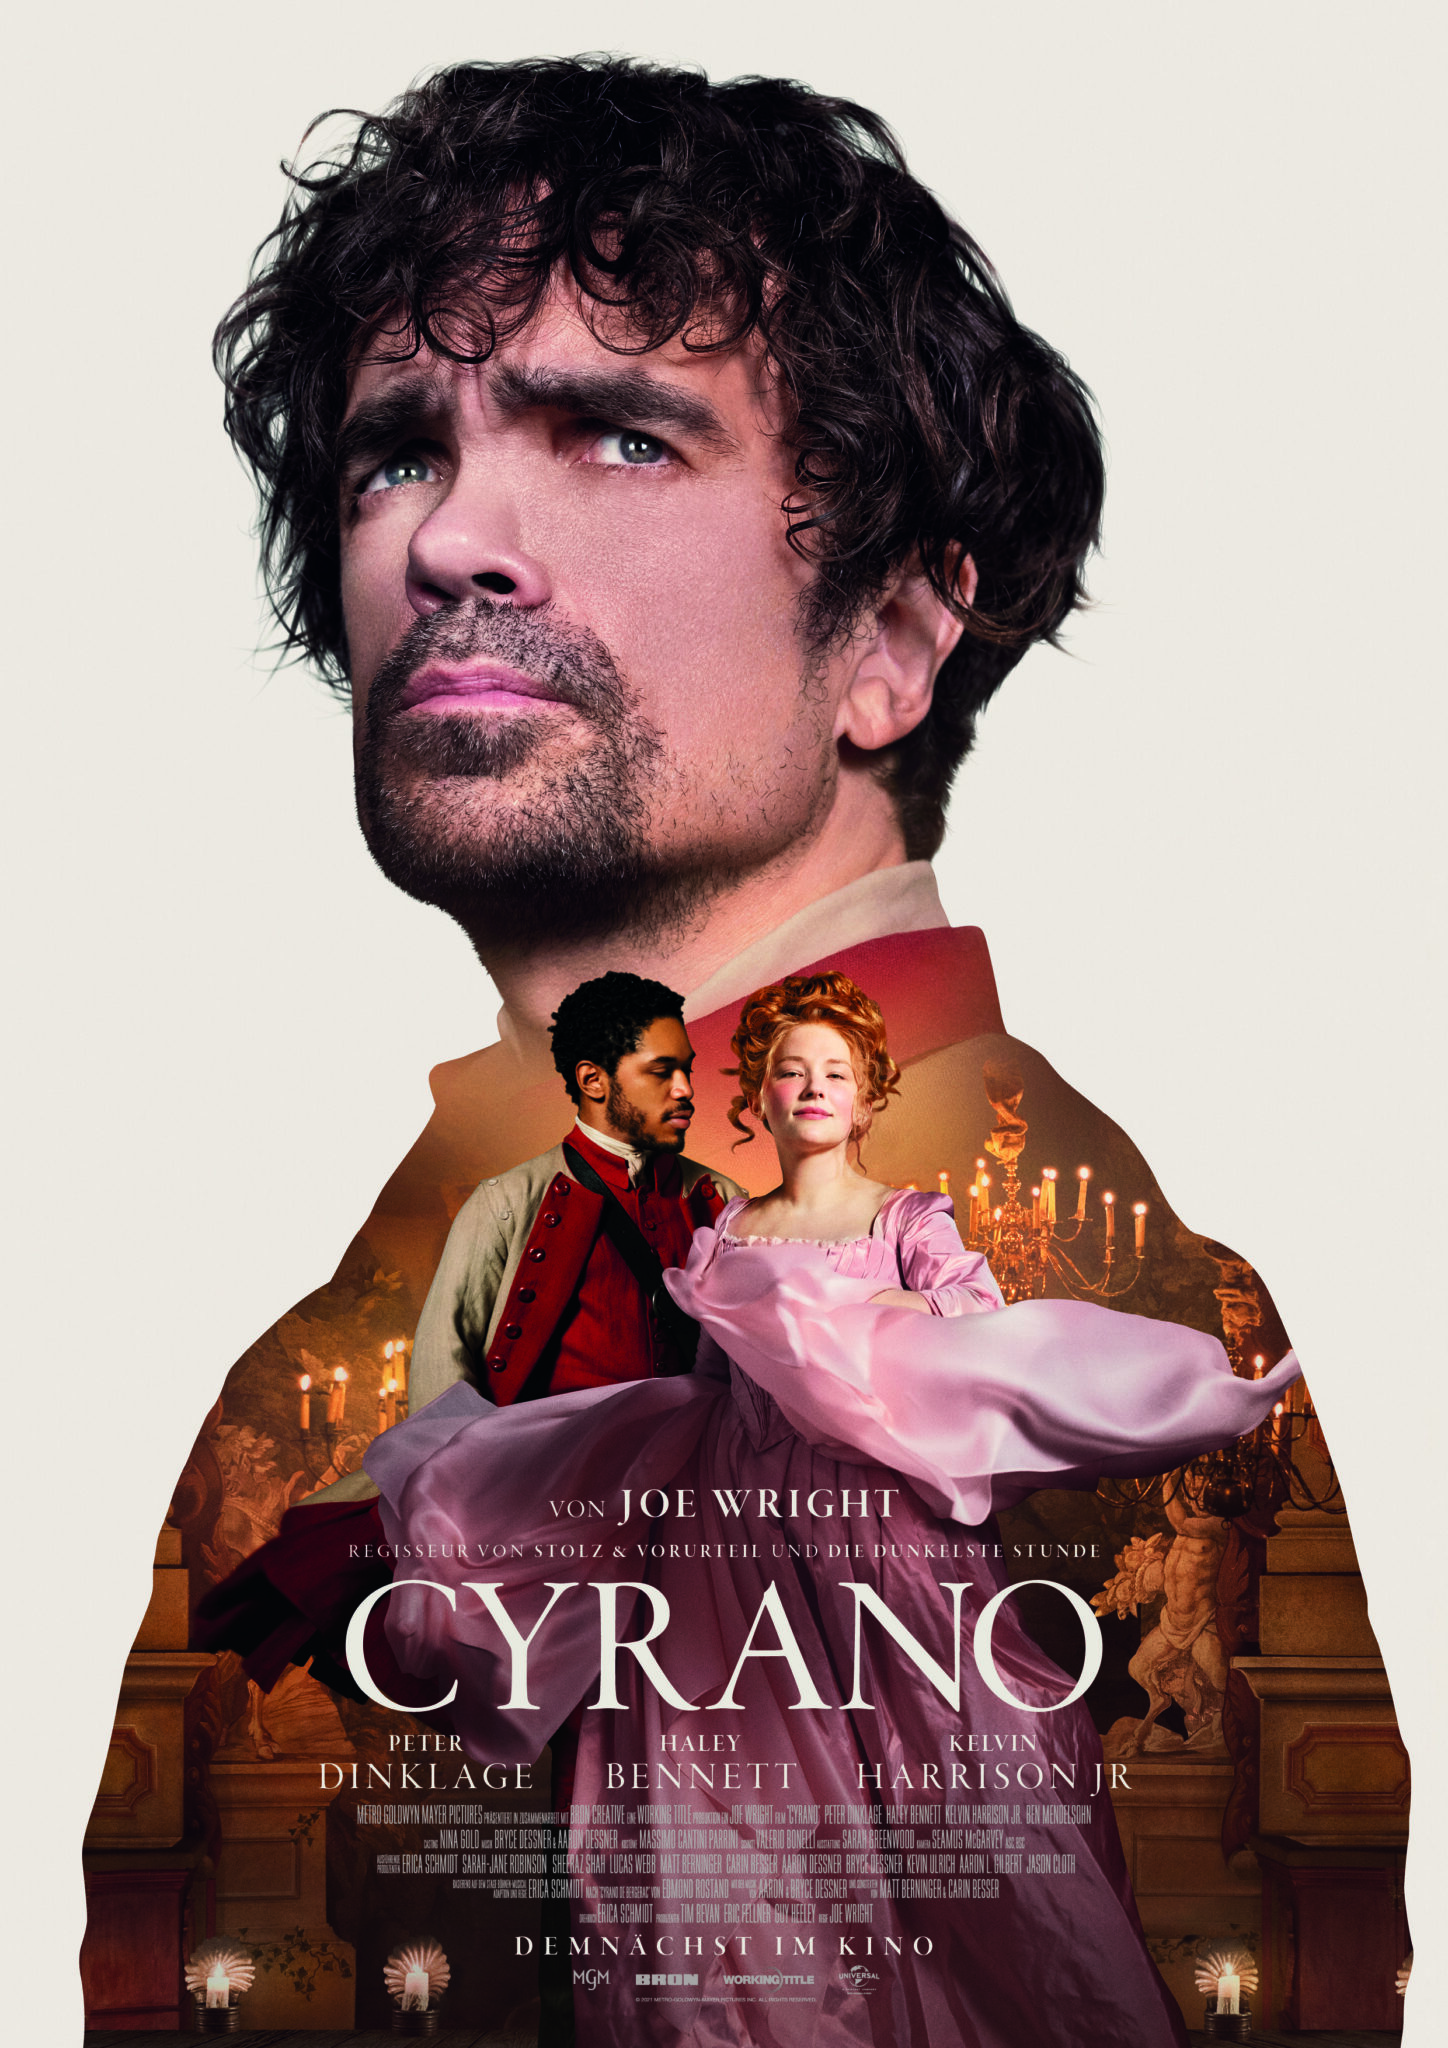 Auf dem Plakat sieht man einen fokussierten Cyrano de Bergerac und innerhalb seines Körpers sind die tanzenden Christian und Roxanne zu erkennen - Cyrano